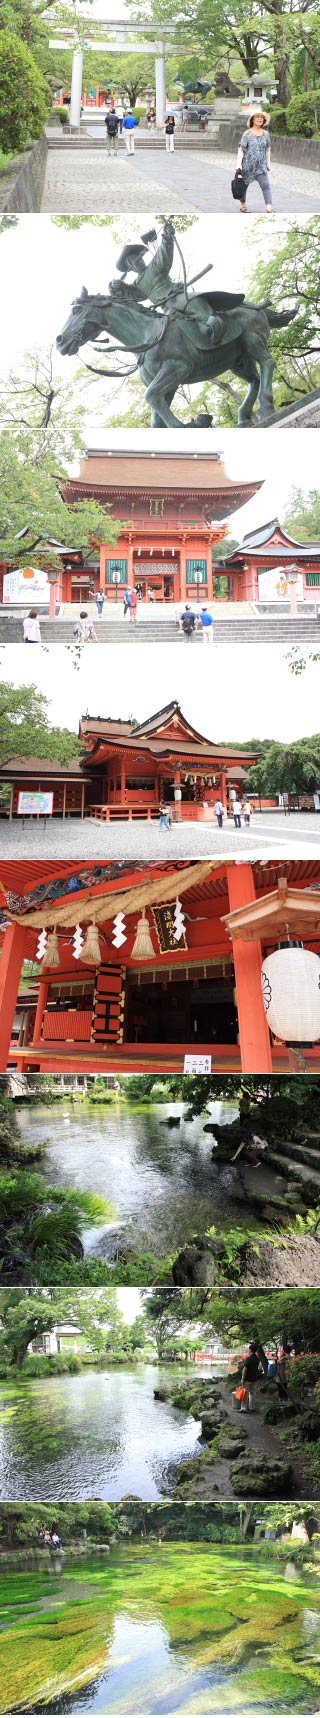 Sengen Grand Shrine